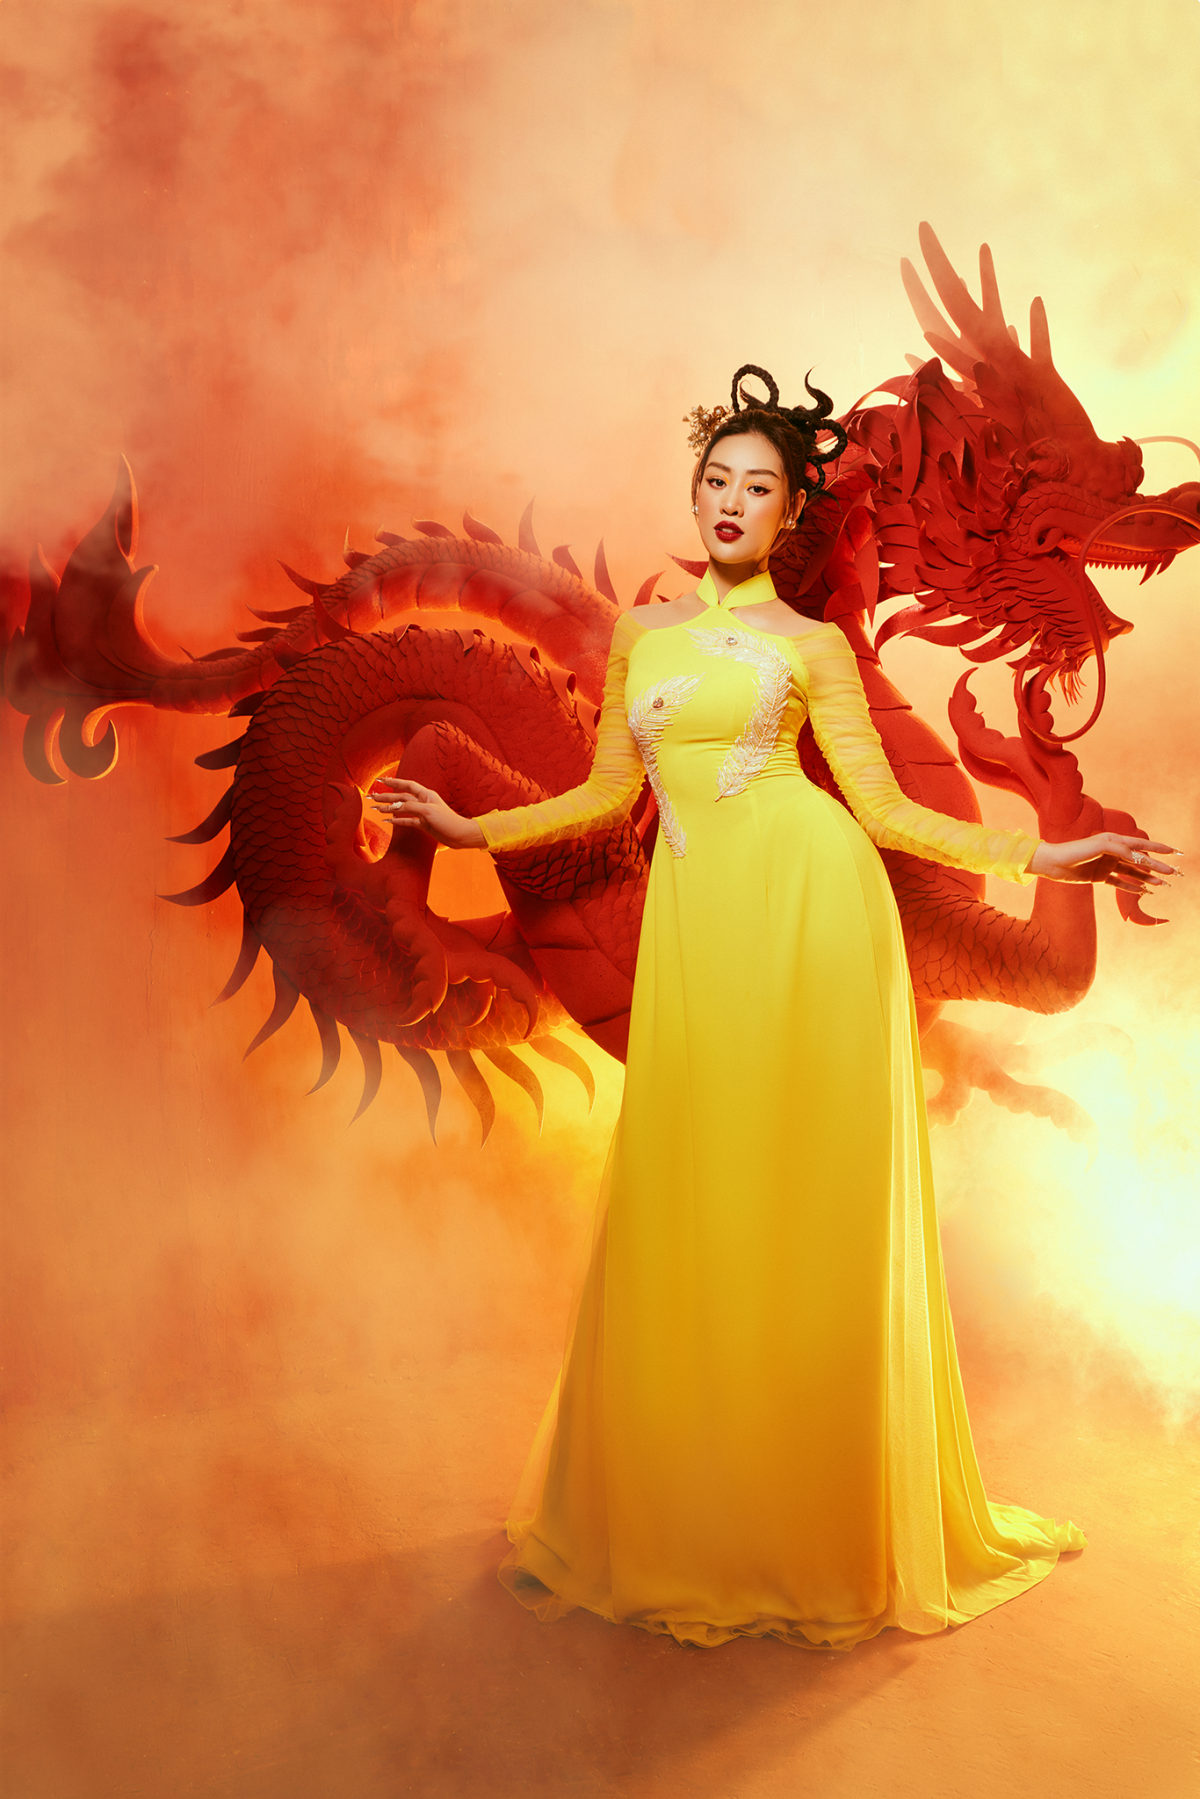 Chọn phong cách trang điểm thuần châu Á và kiểu tóc búi cách điệu, Hoa hậu Khánh Vân còn tái hiện lại hình ảnh người phụ nữ phương Đông dịu dàng nhưng không kém phần thu hút một cách bí ẩn – nét đẹp của sự duyên dáng, truyền thống.